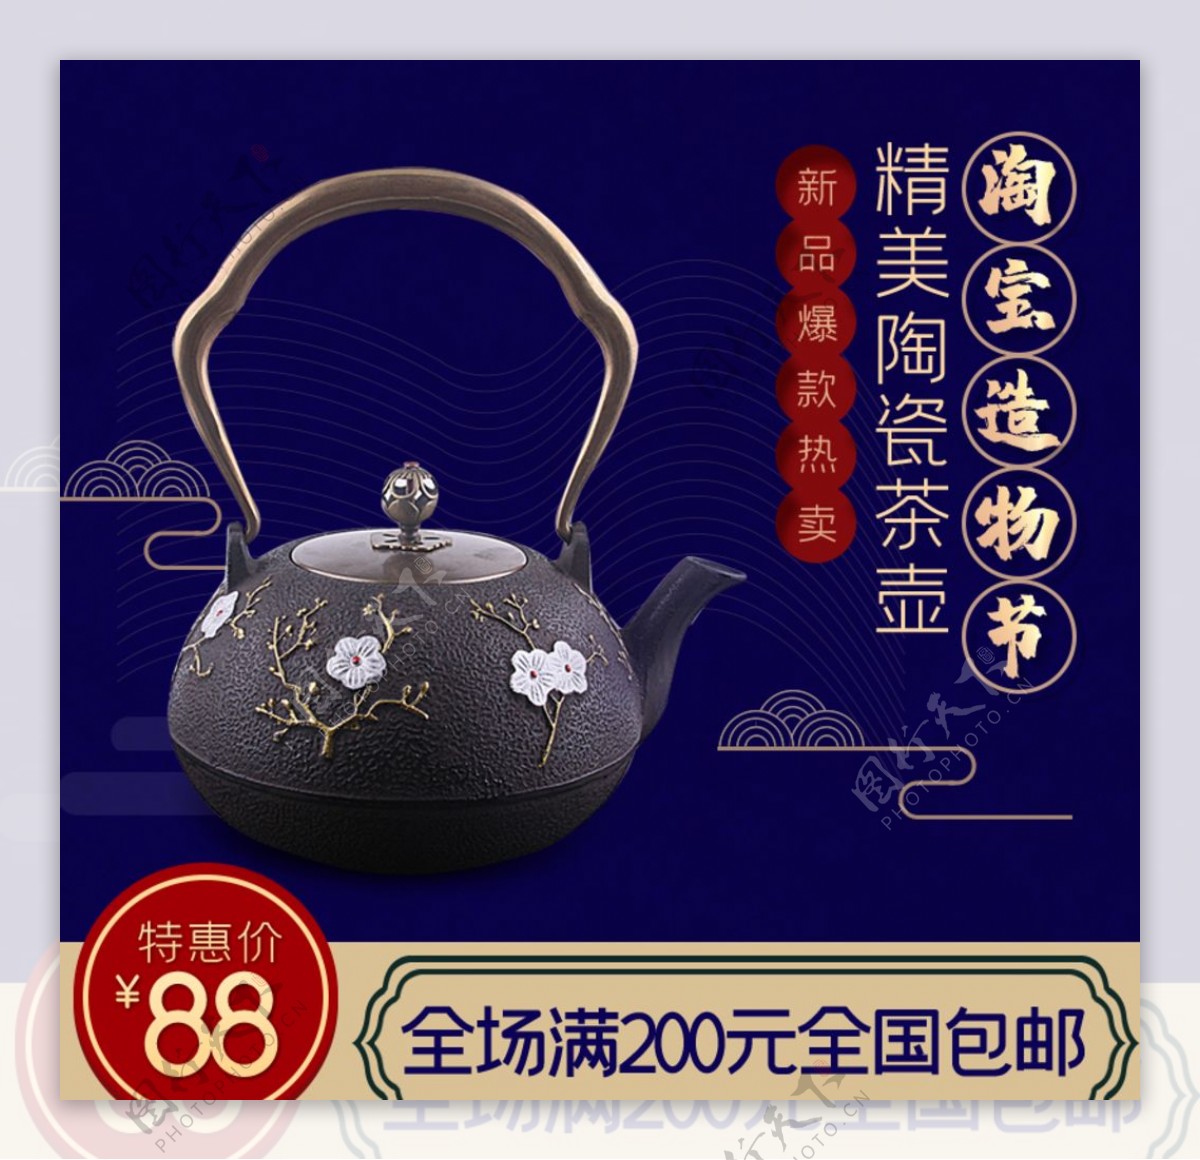 陶瓷茶壶主图图片